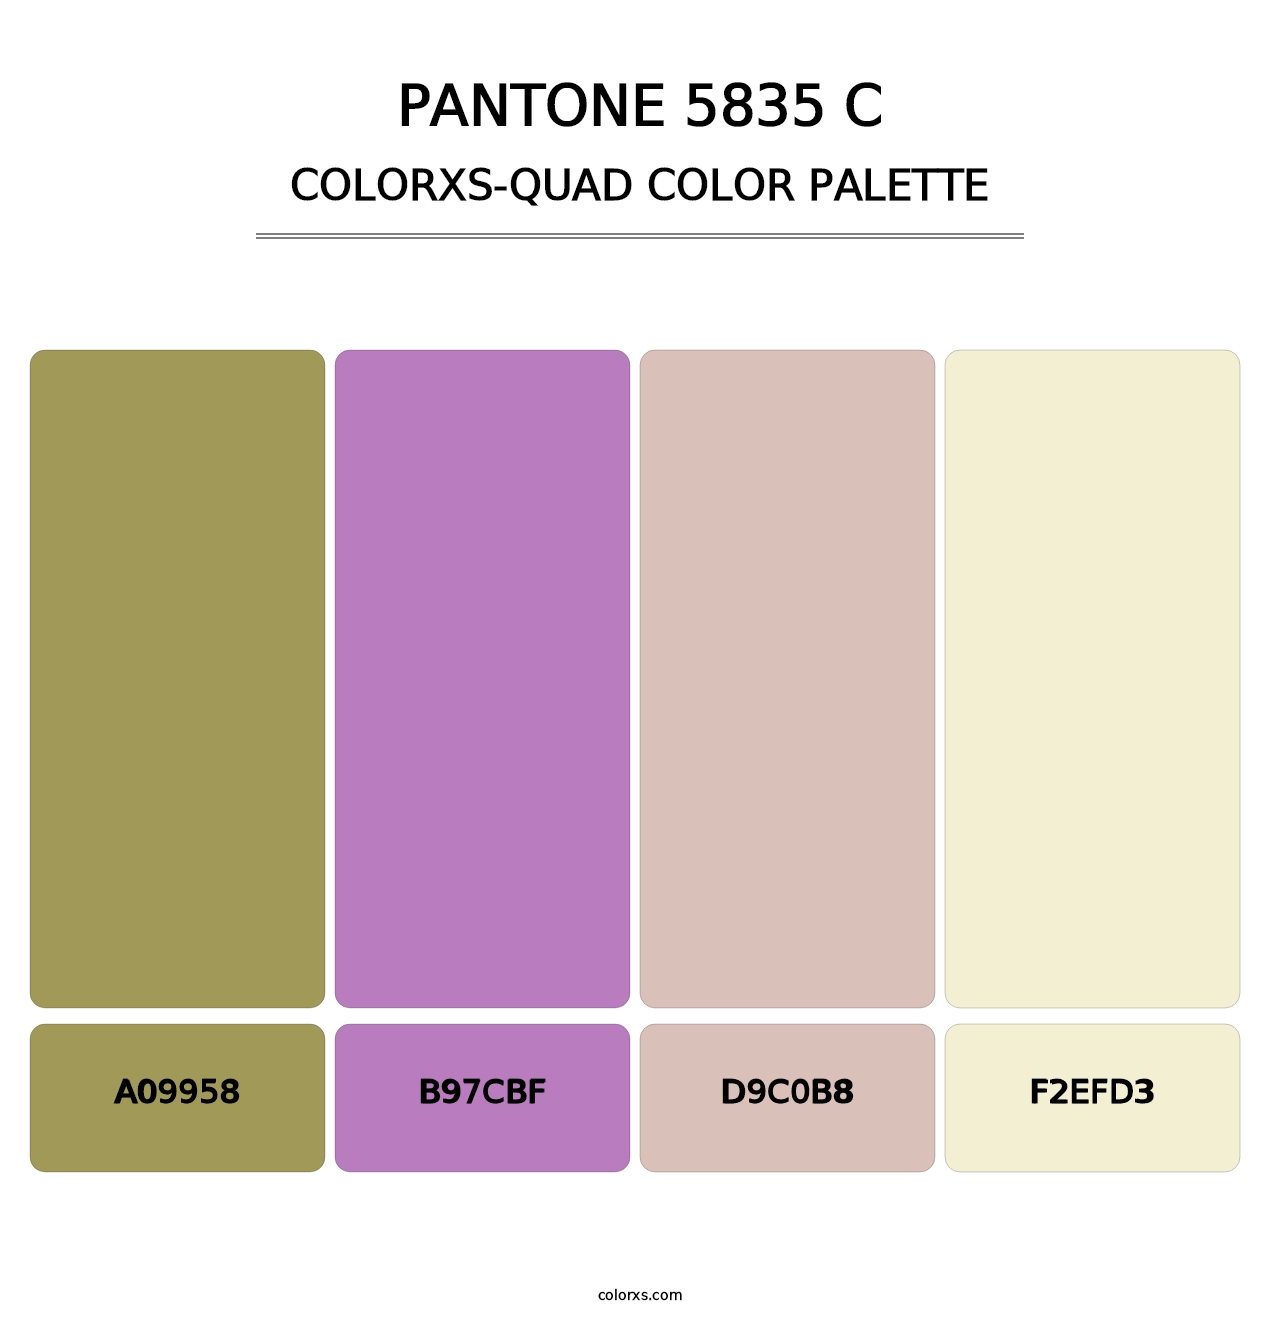 PANTONE 5835 C - Colorxs Quad Palette